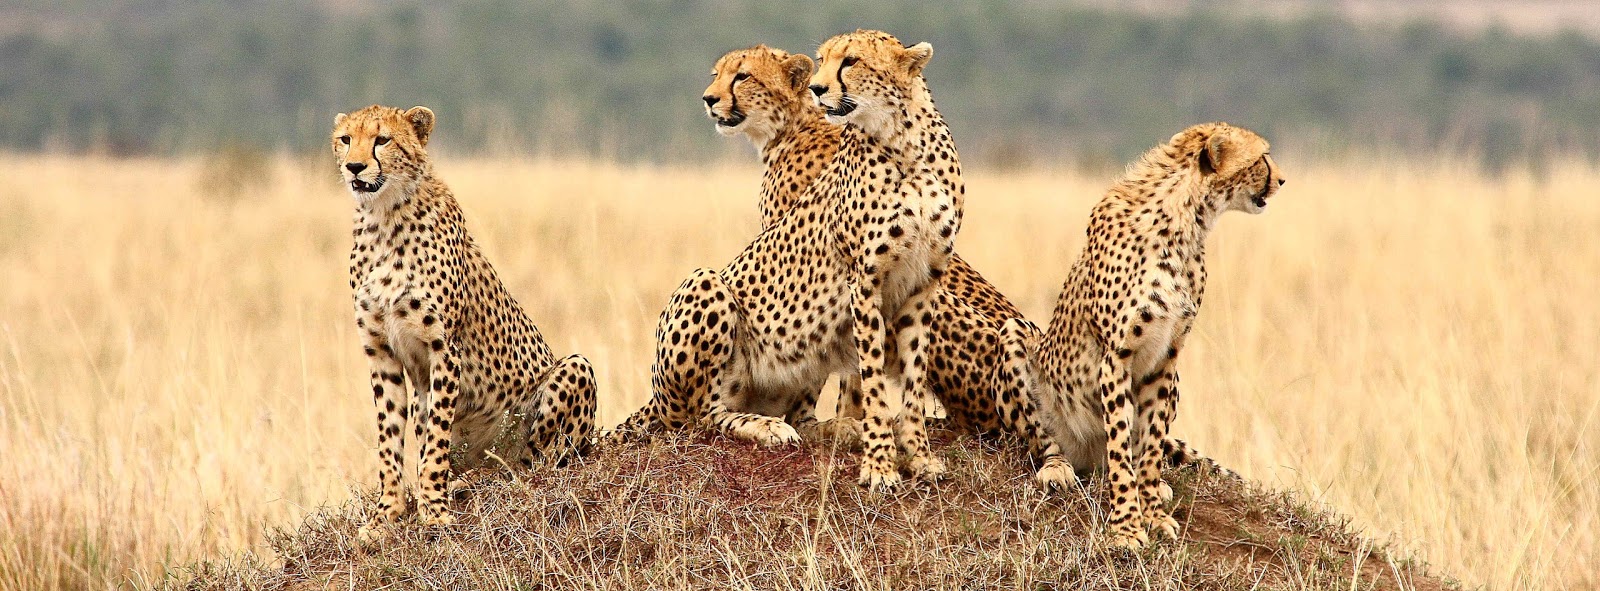 ¡Safari en Kenia! 8 días y 7 noches en Hoteles 3* con Pensión Completa. Incluye Vuelos y Traslados + Visitas - Safaris